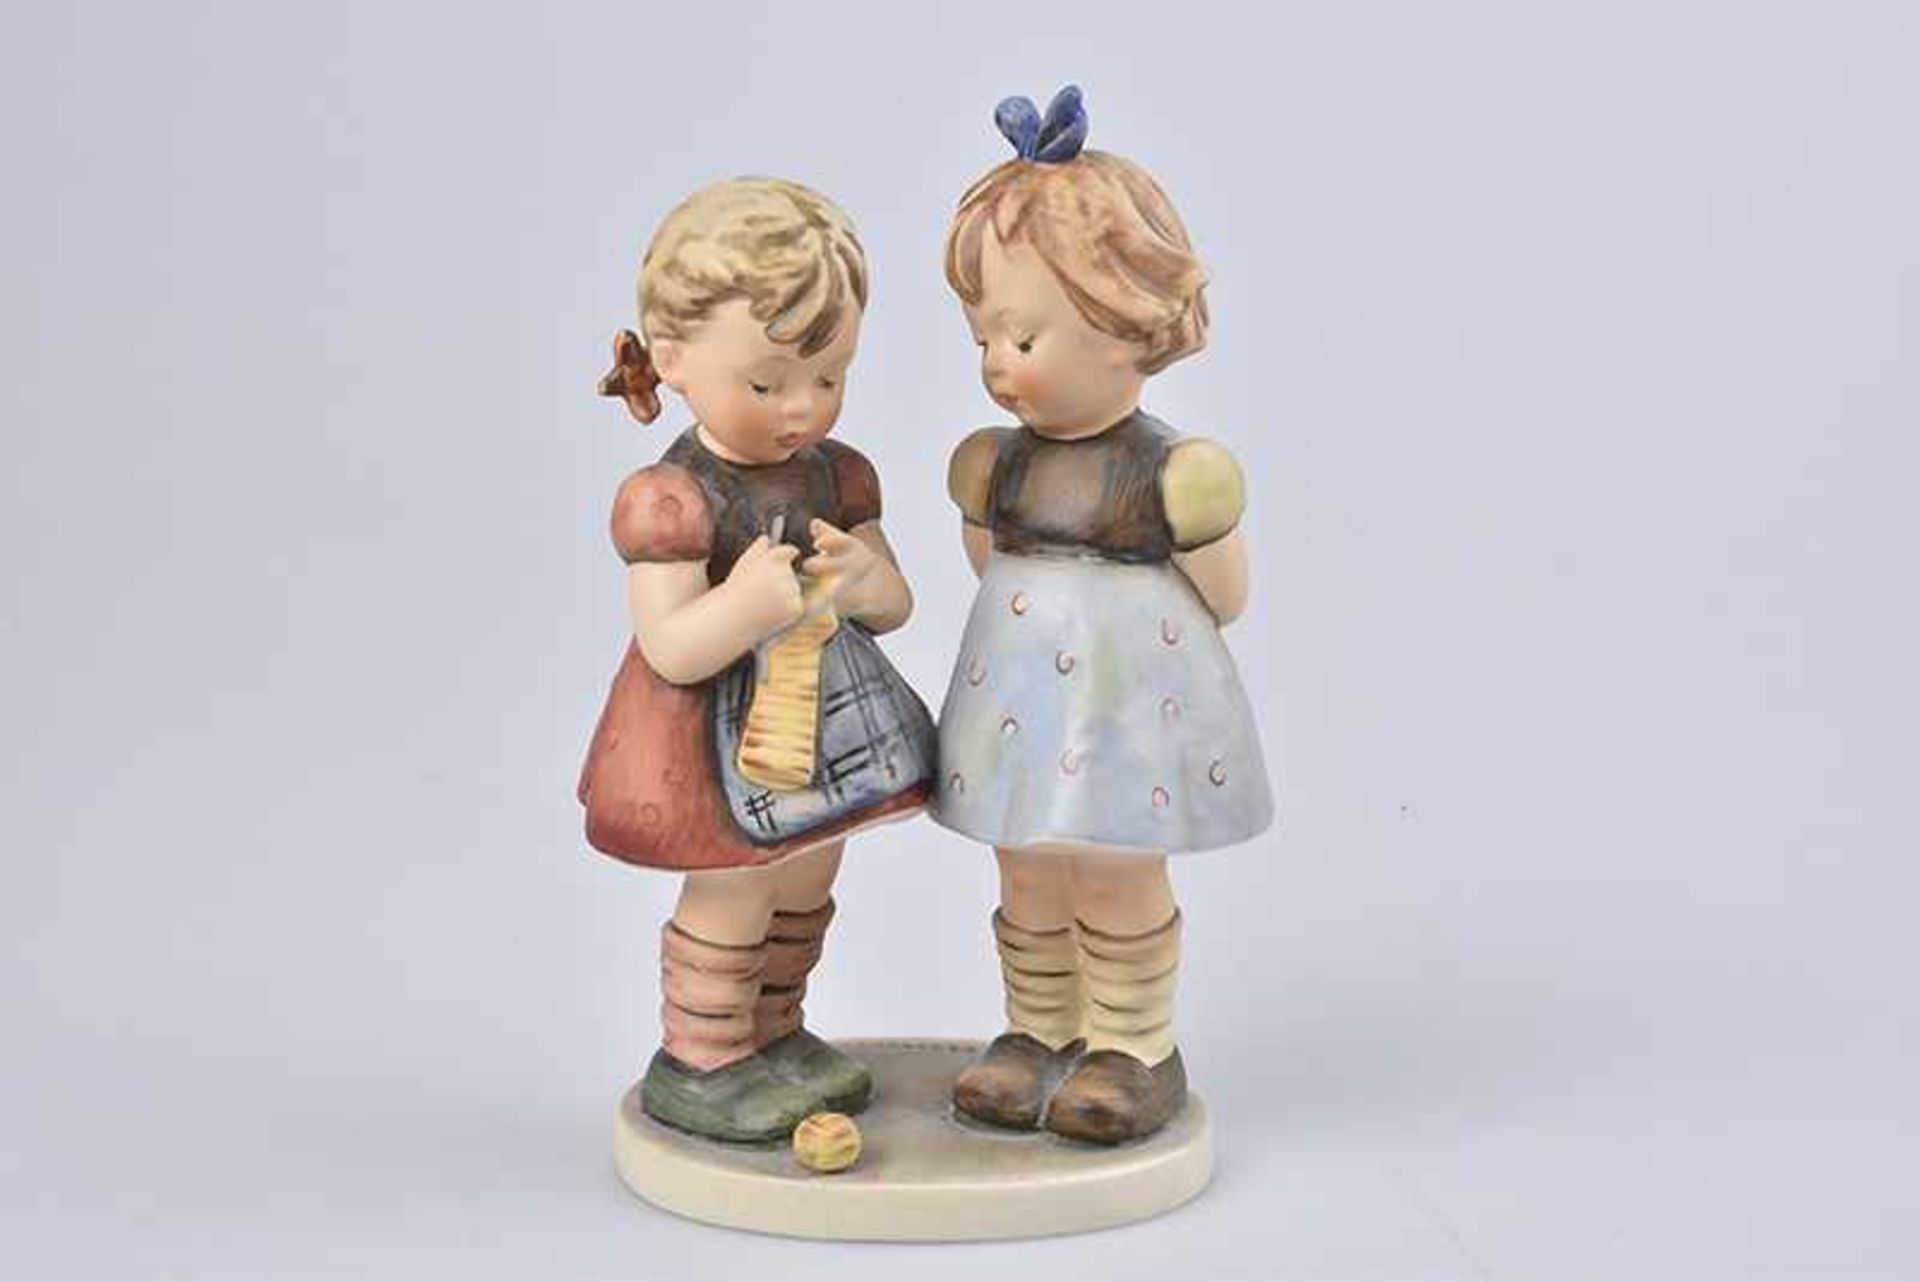 HUMMEL GOEBEL Figur, Porzellan, polychrome Bemalung, H 19 cm, "Stricken will gelernt sein", Modell-